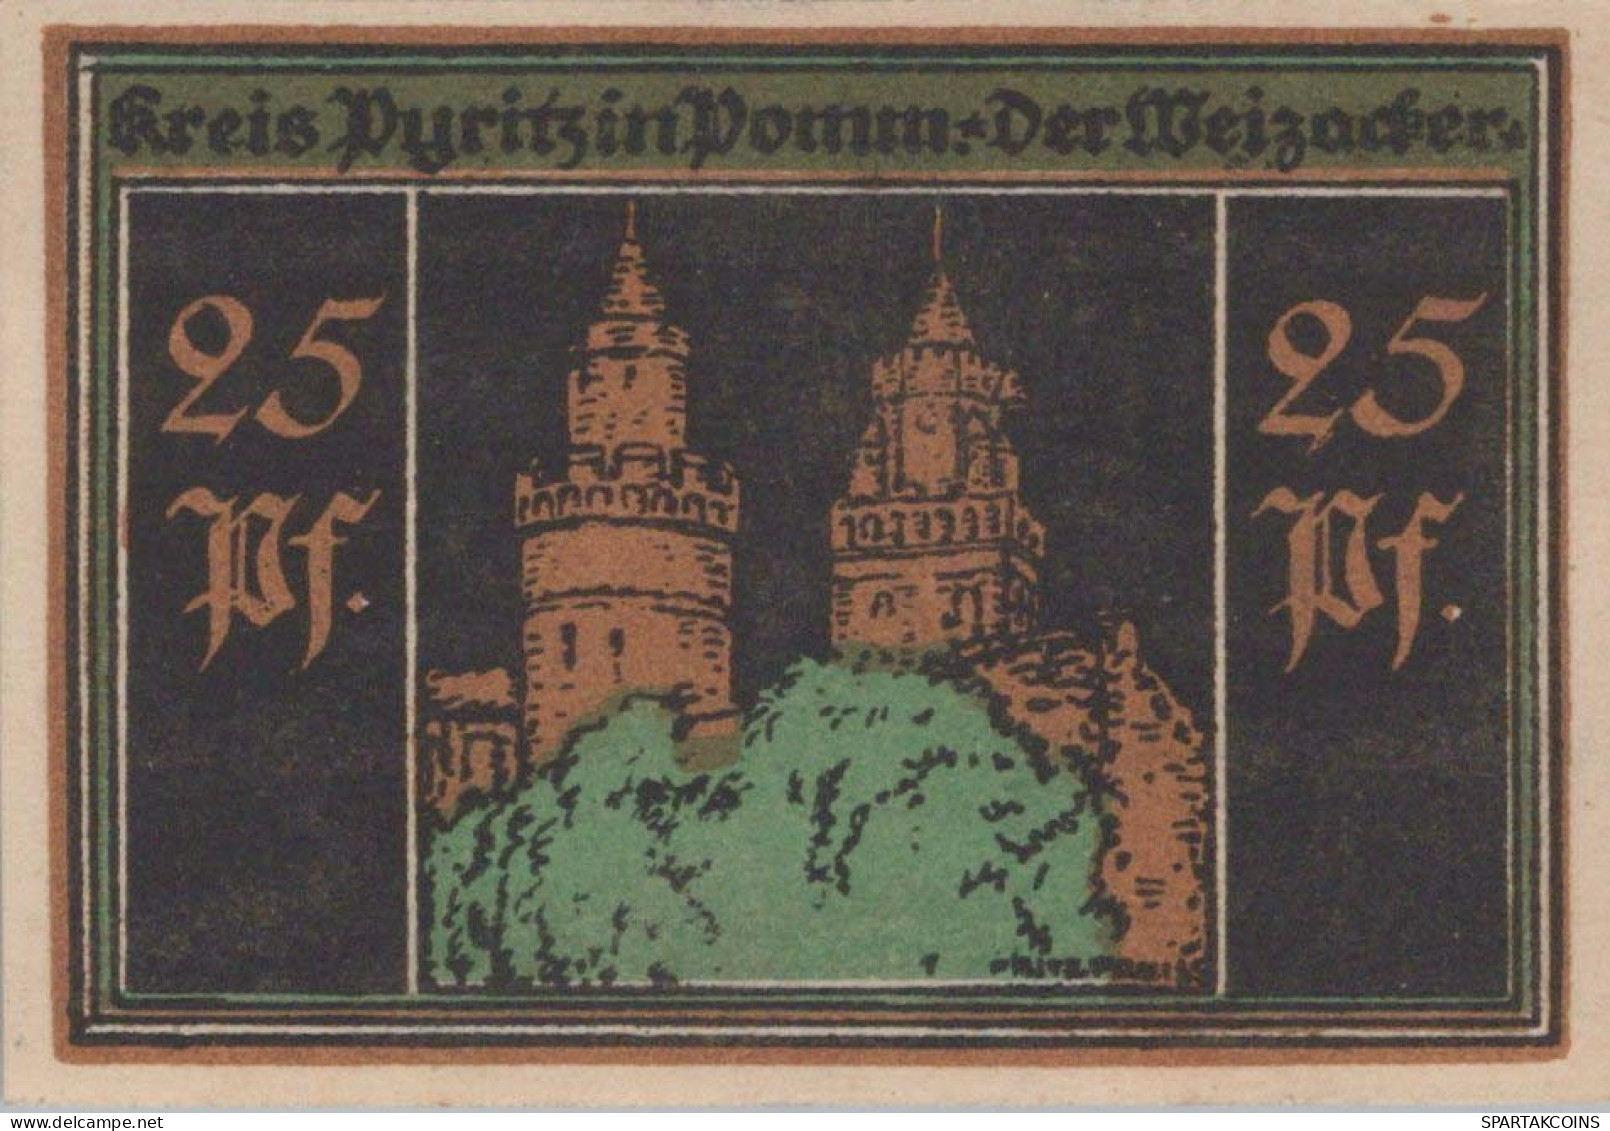 25 PFENNIG 1921 Stadt PYRITZ Pomerania UNC DEUTSCHLAND Notgeld Banknote #PB792 - [11] Emissions Locales